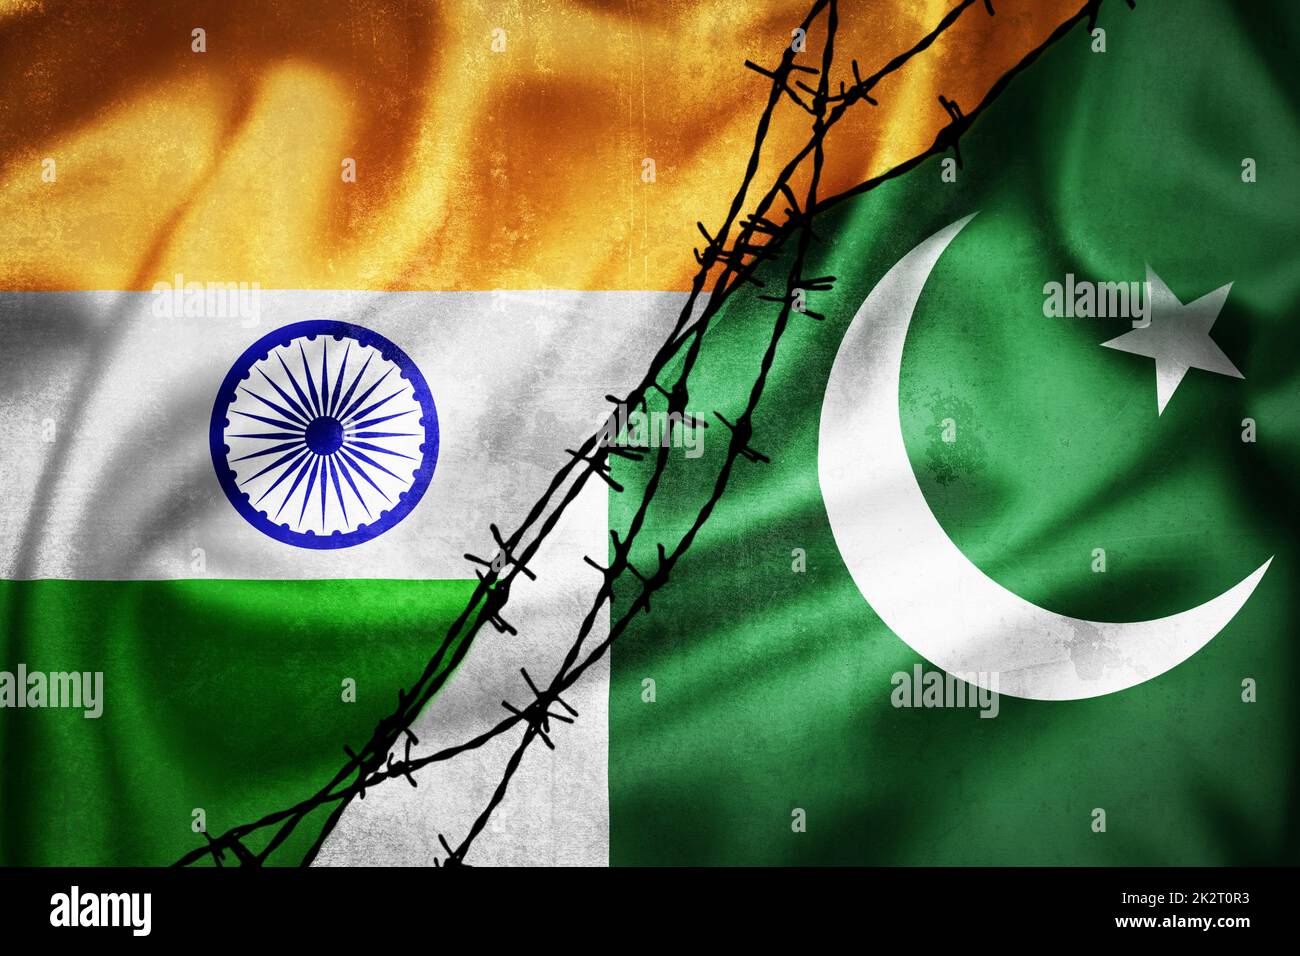 Drapeaux de grunge de l'Inde et du Pakistan divisés par l'illustration de barbelés Banque D'Images